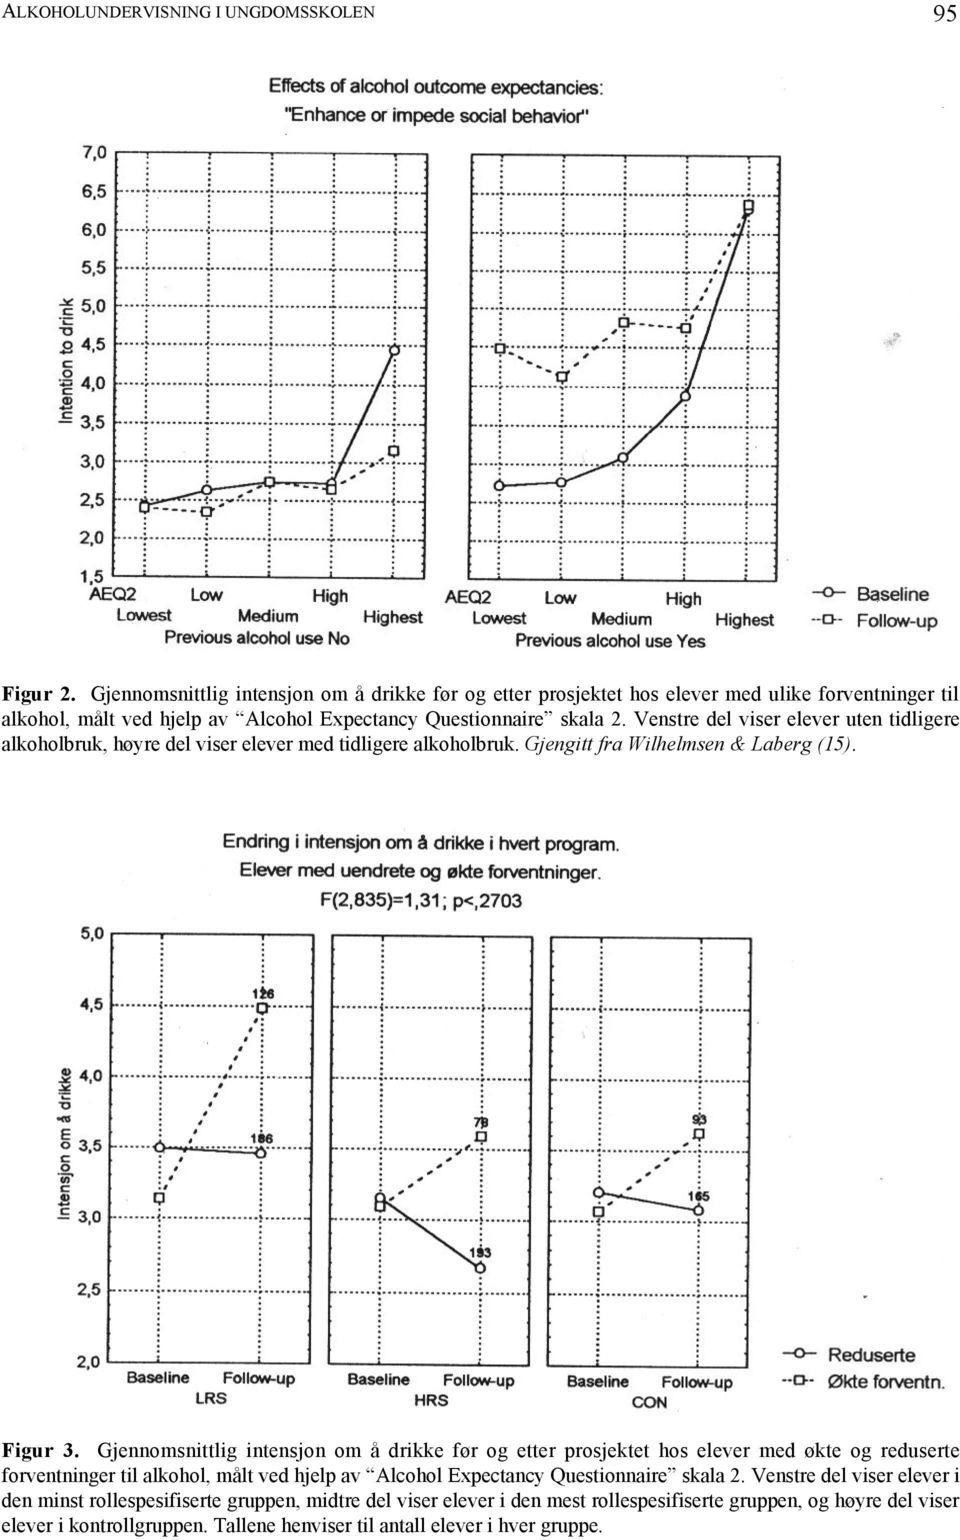 Venstre del viser elever uten tidligere alkoholbruk, høyre del viser elever med tidligere alkoholbruk. Gjengitt fra Wilhelmsen & Laberg (15). Figur 3.